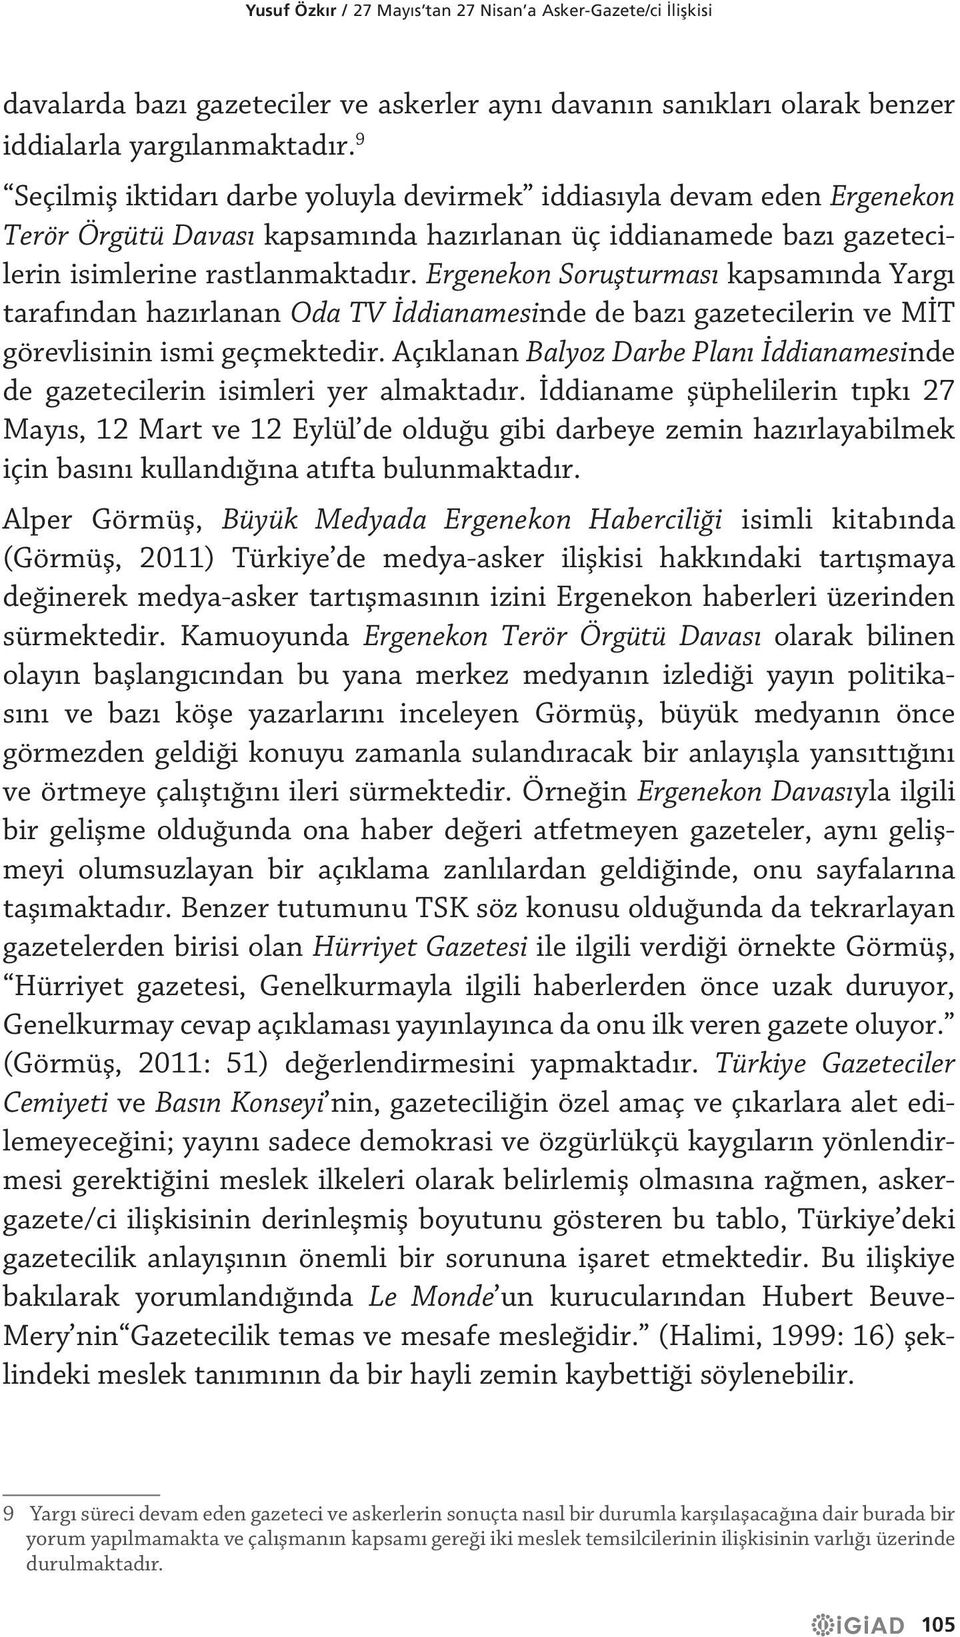 Ergenekon Soruşturması kapsamında Yargı tarafından hazırlanan Oda TV İddianamesinde de bazı gazetecilerin ve MİT görevlisinin ismi geçmektedir.